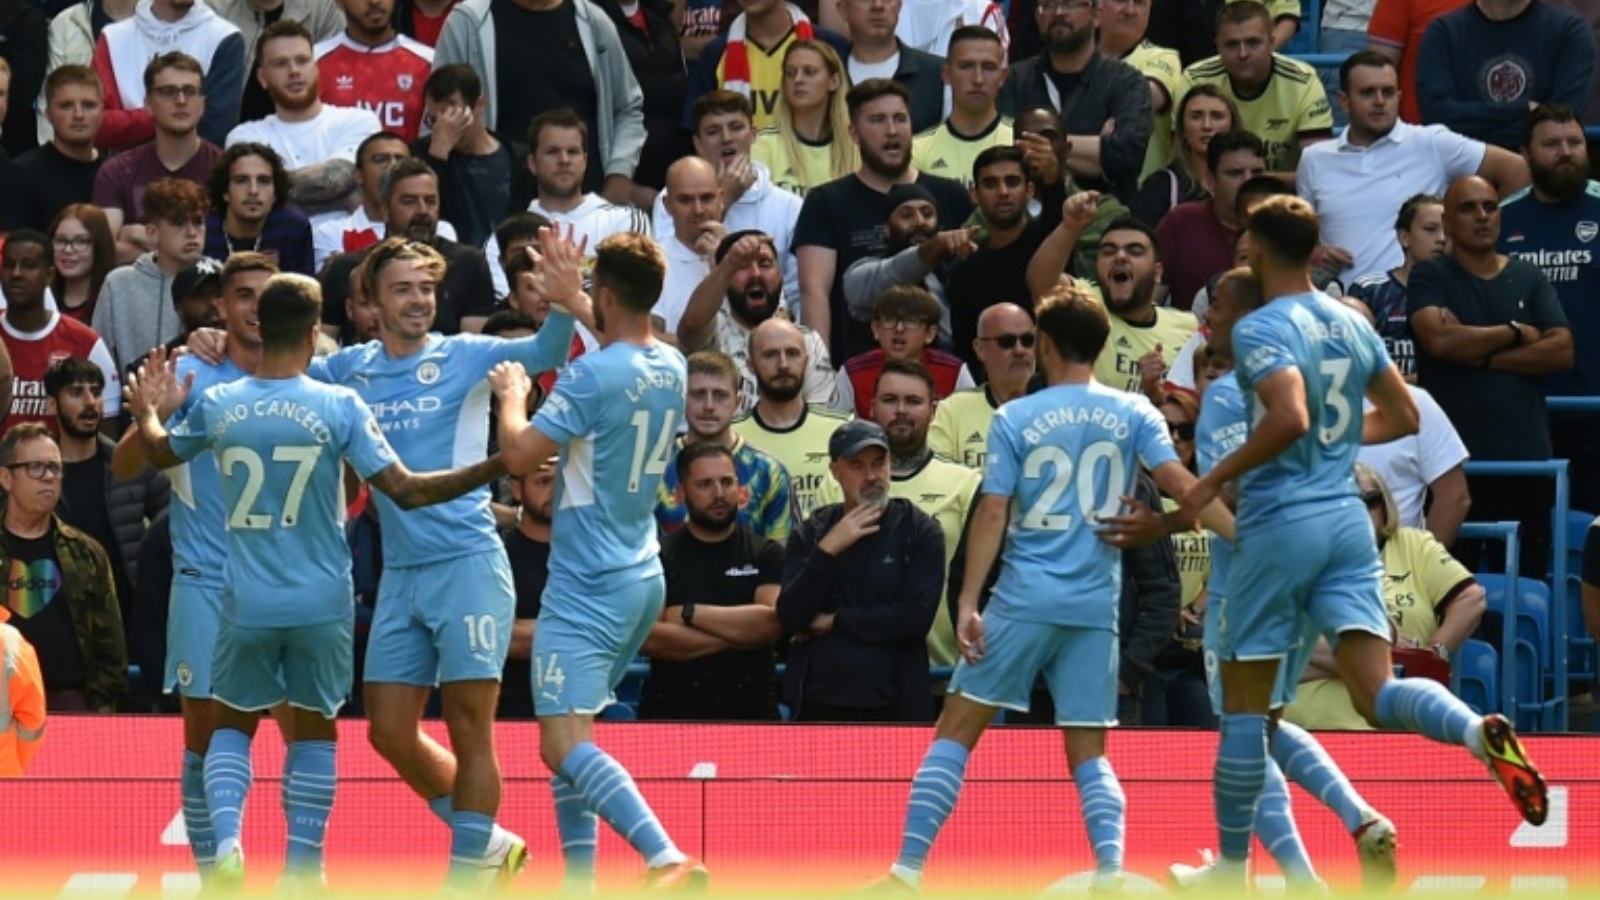 لاعبو مانشستر سيتي يحتفلون بهدف الإسباني فيران توريس ضد أرسنال في الدوري الإنكليزي الممتاز لكرة القدم على ملعب الاتحاد. بتاريخ 28 آب/ أغسطس 2021.